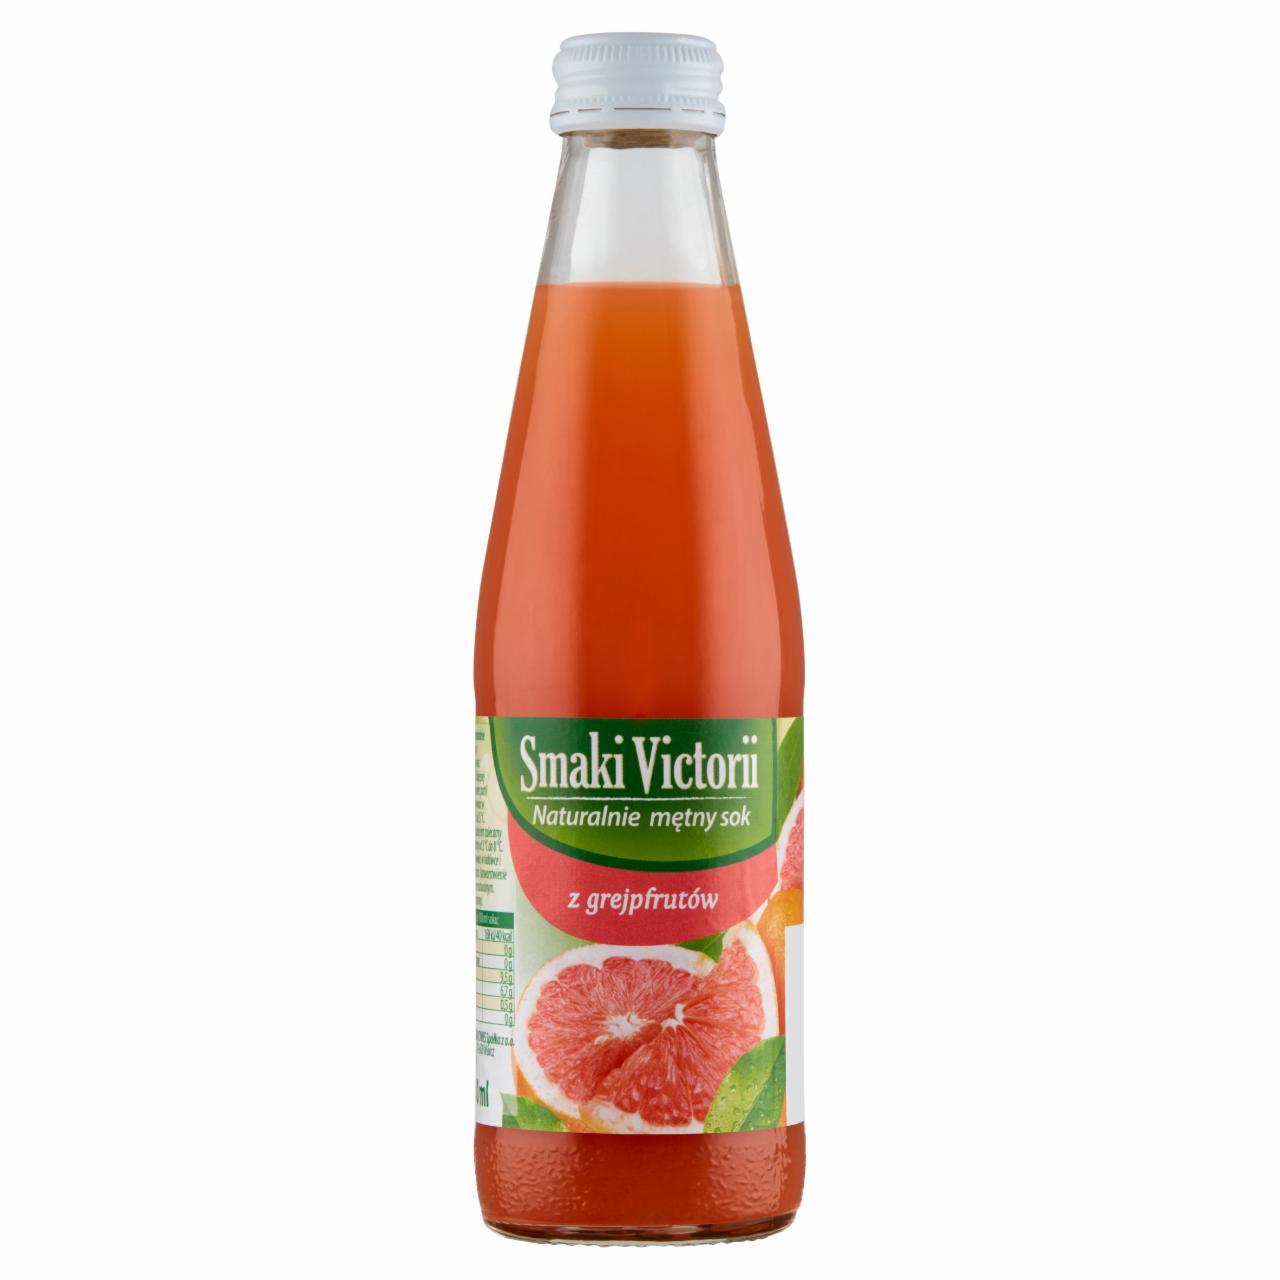 Zdjęcia - Smaki Victorii Naturalnie mętny sok z grejpfrutów 250 ml